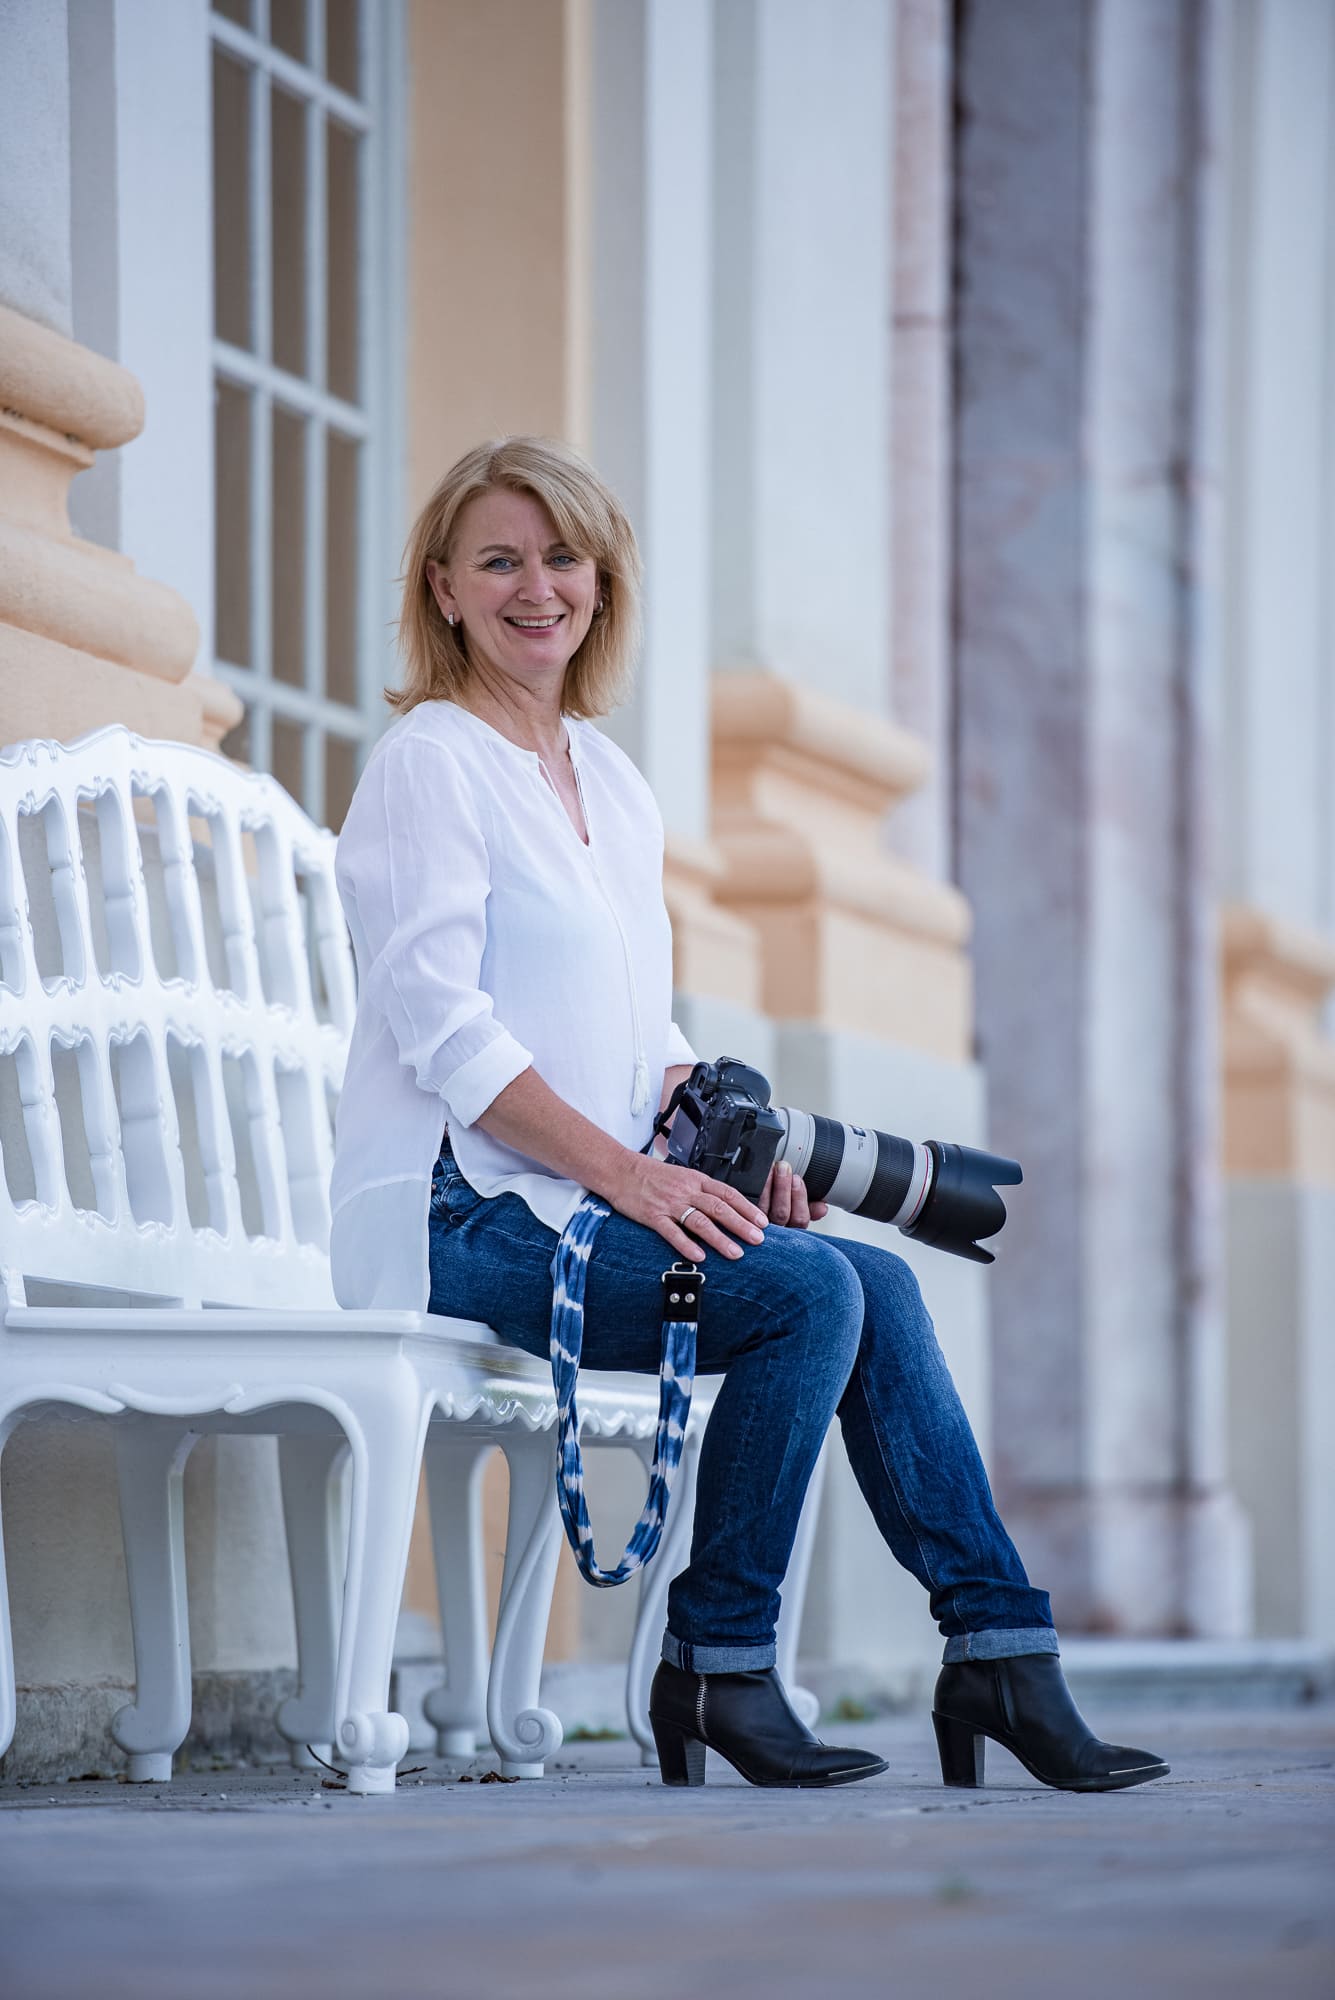 Tierfotografin, eine Fotografin sitzt mit ihrer Kamera auf einer Bank.